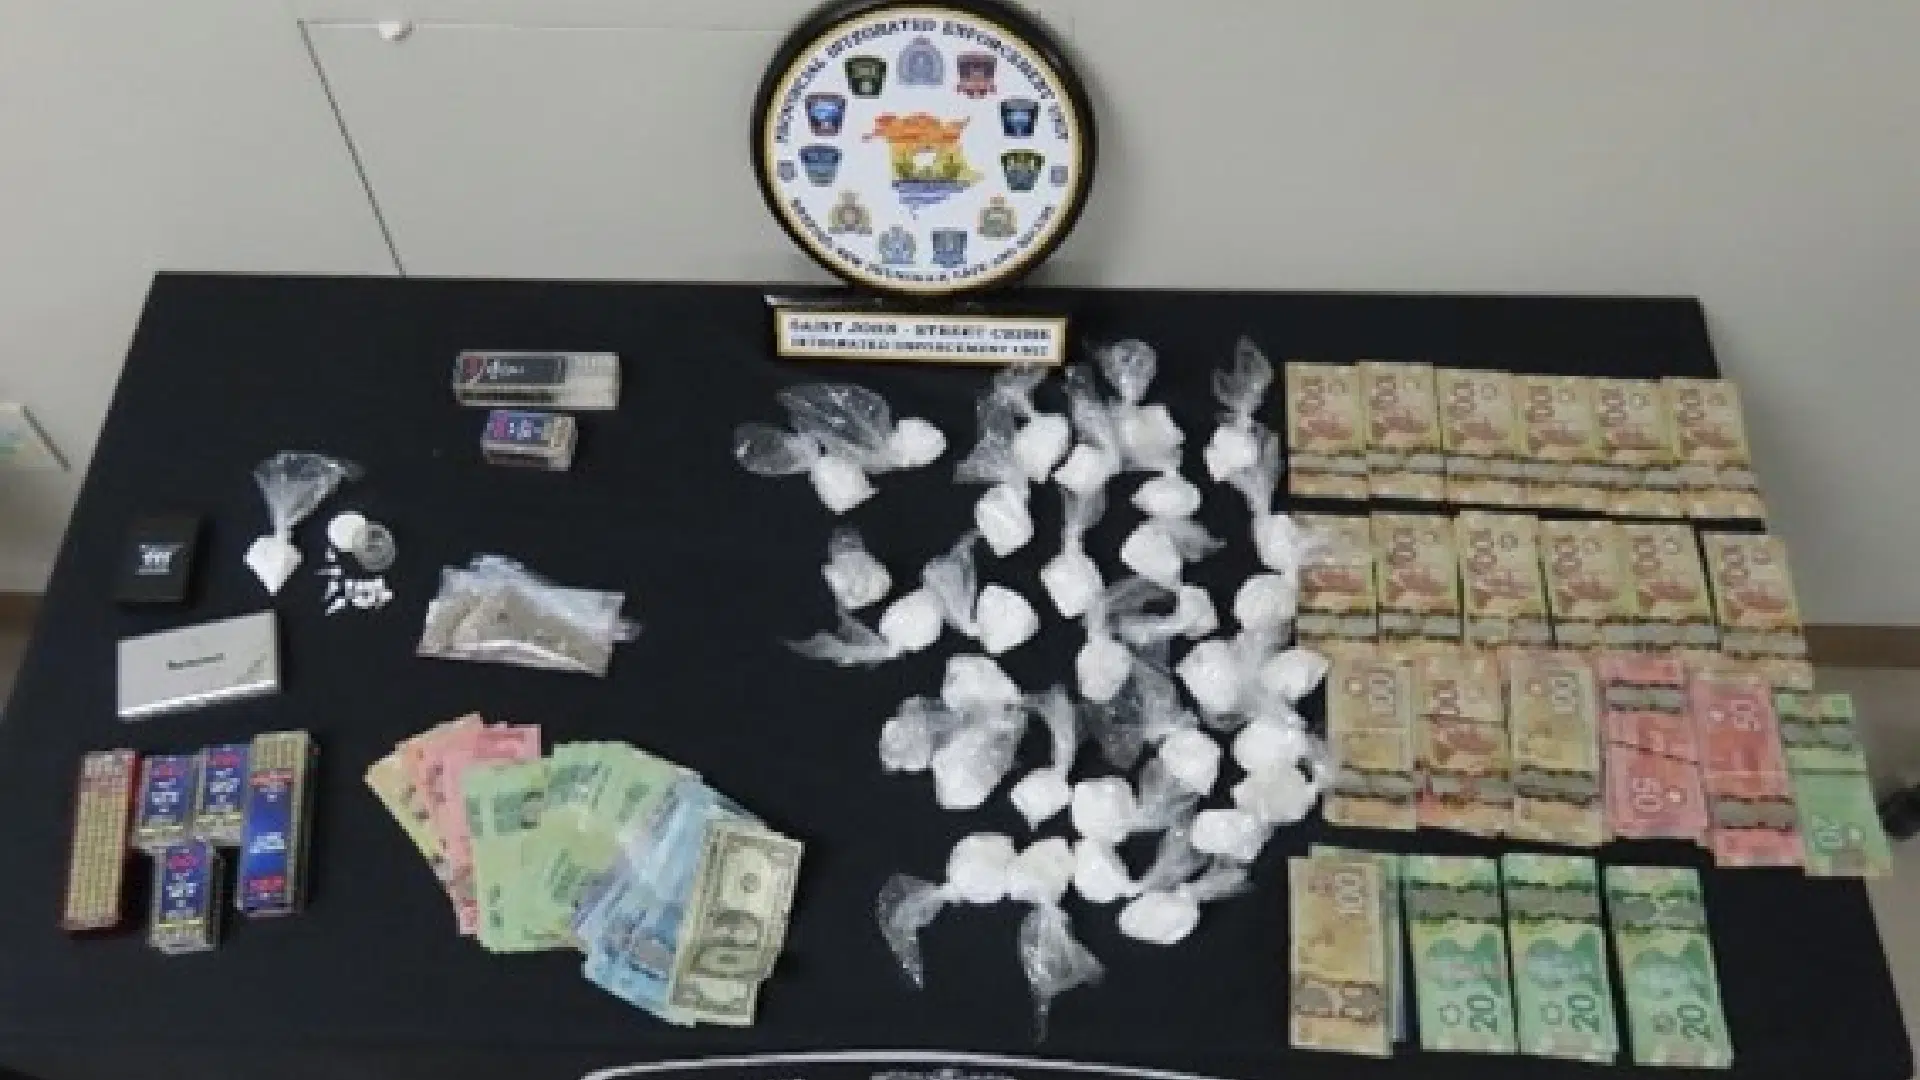 Police seize $116K in drugs, arrest 8 people